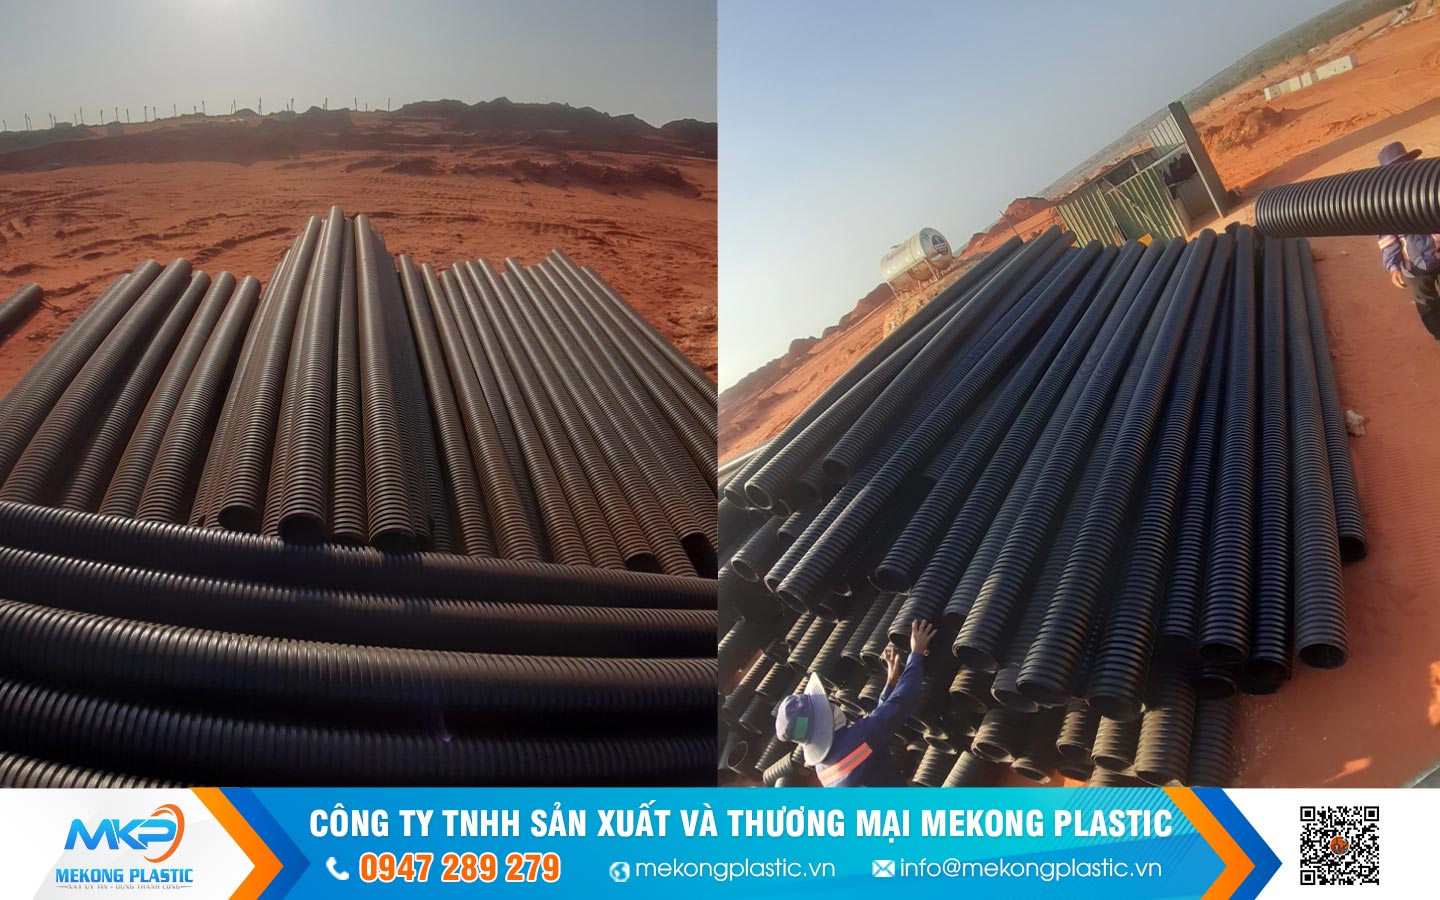 4 lí do tại sao nên chọn sản phẩm ống nhựa của Mekong Plastic